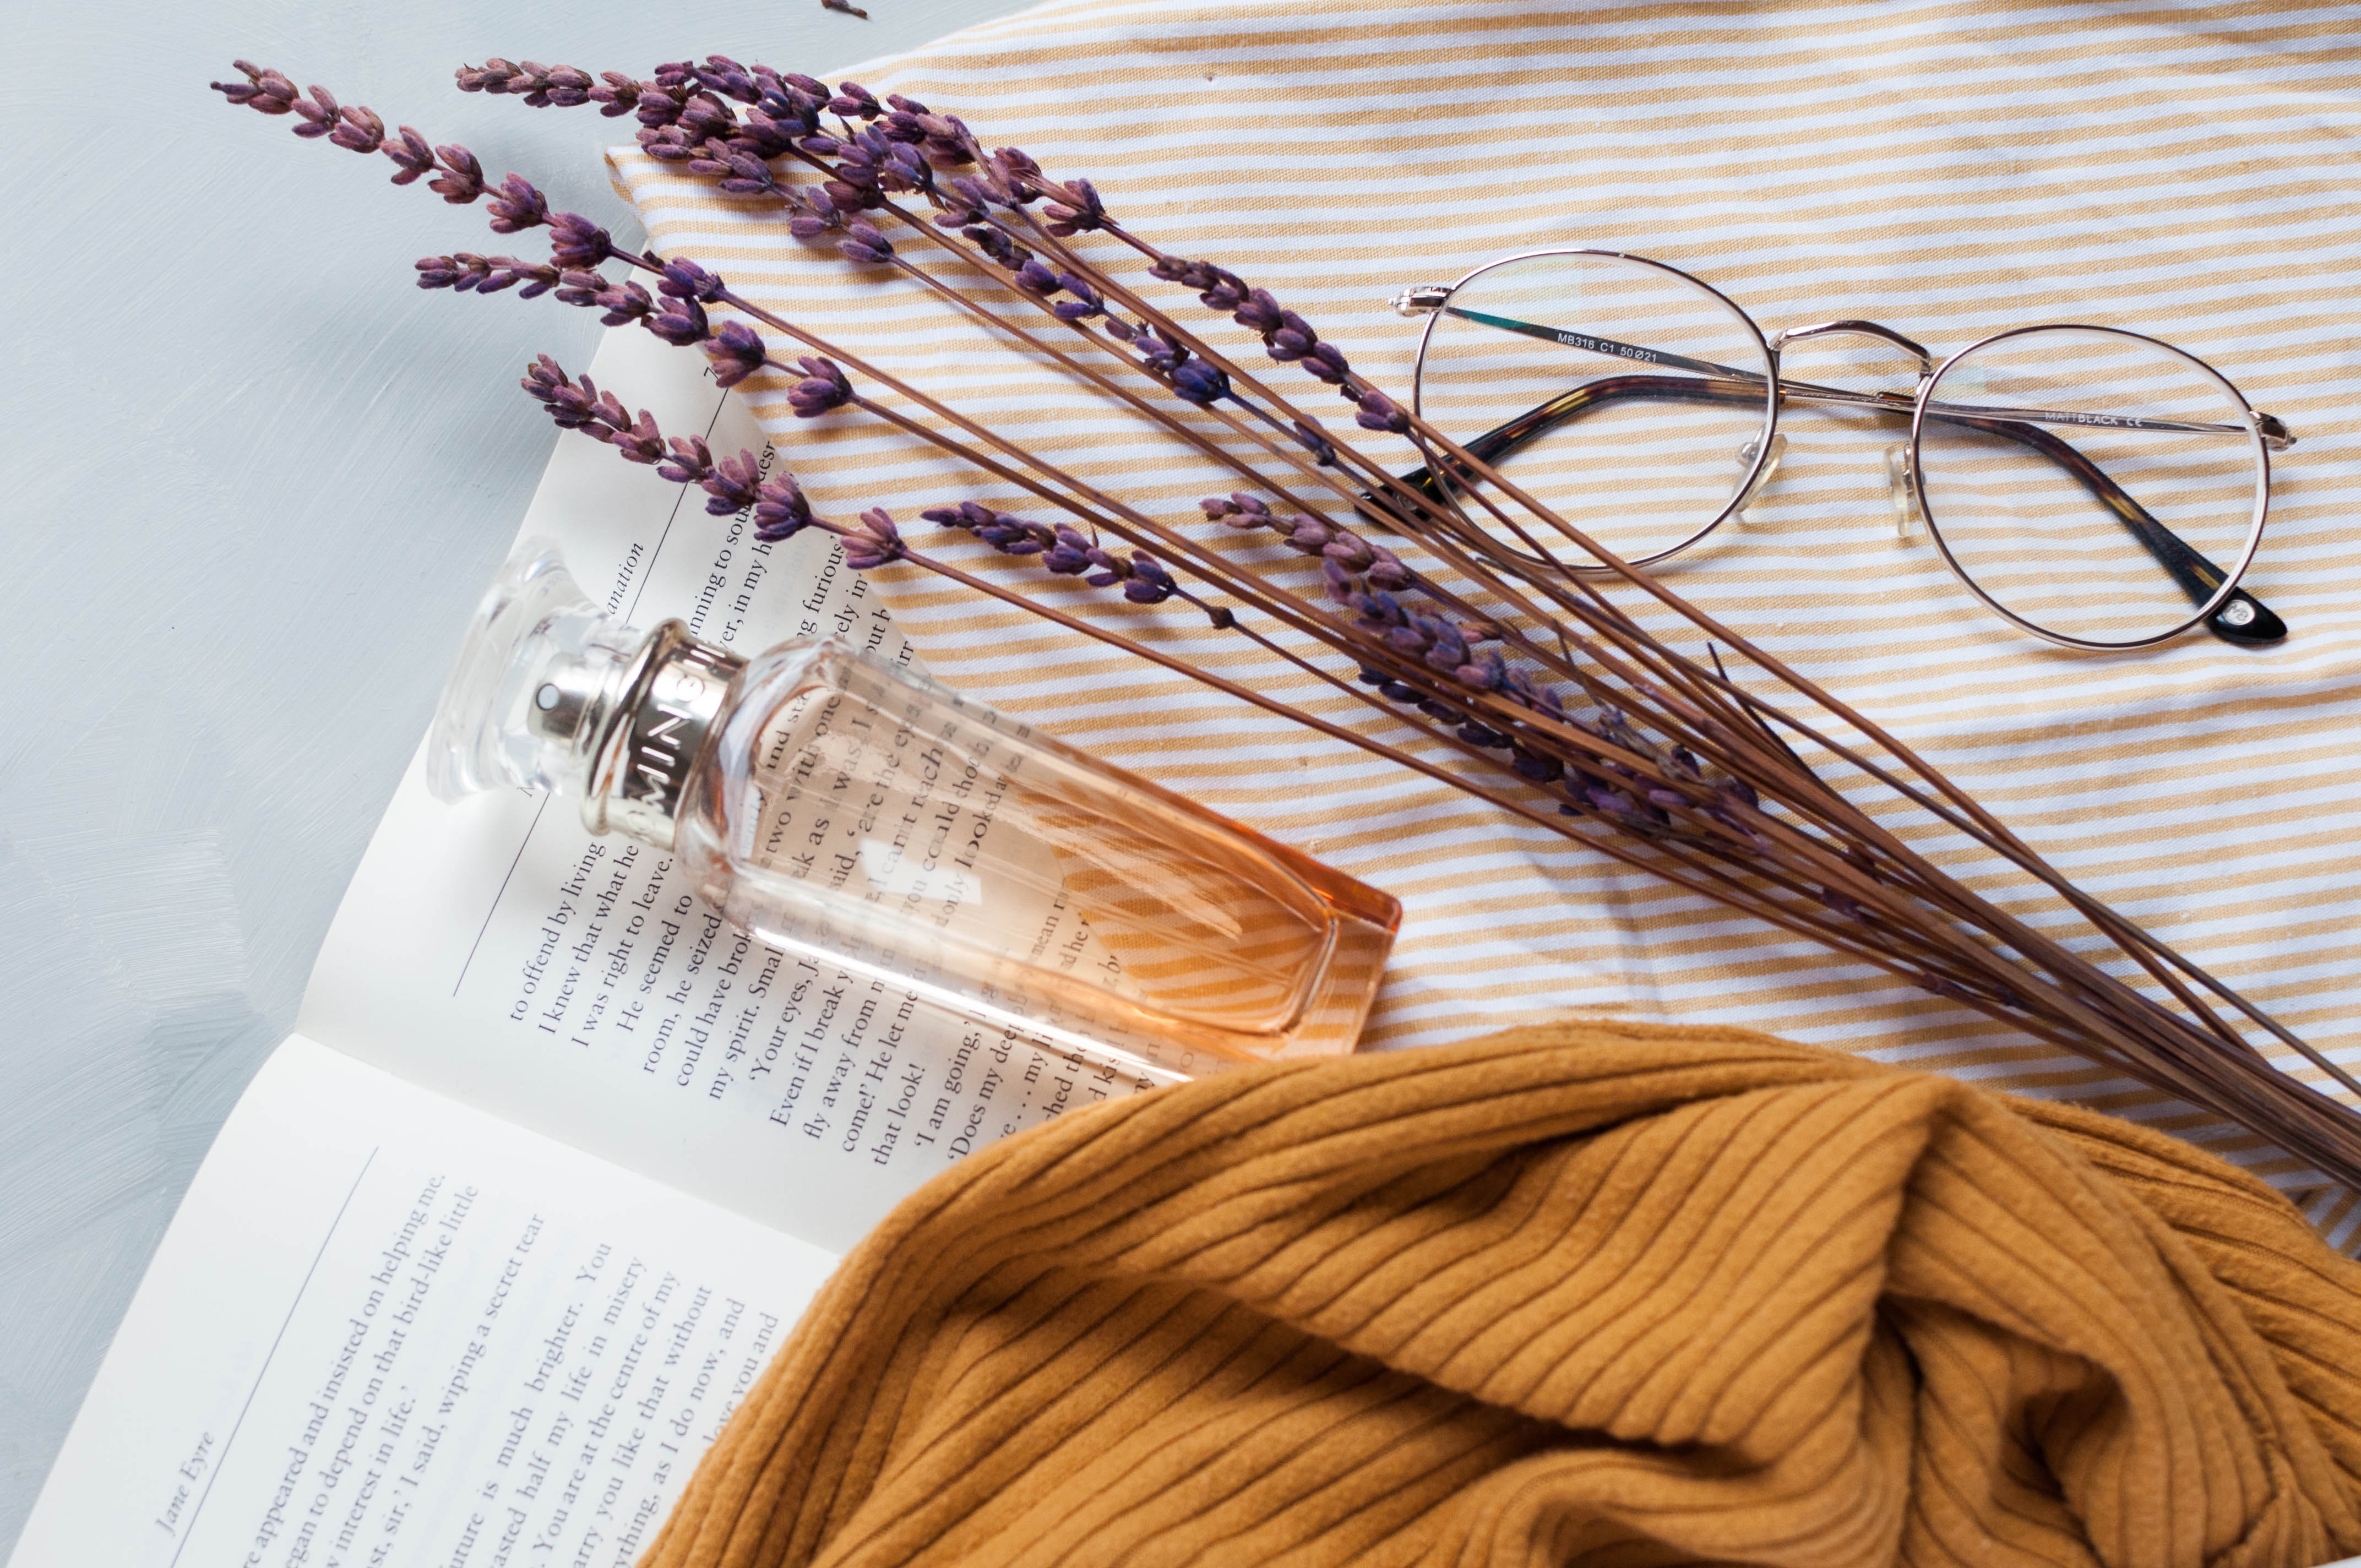 frasco de perfume sobre un libro al lado de unas gafas y un ramo de lavanda